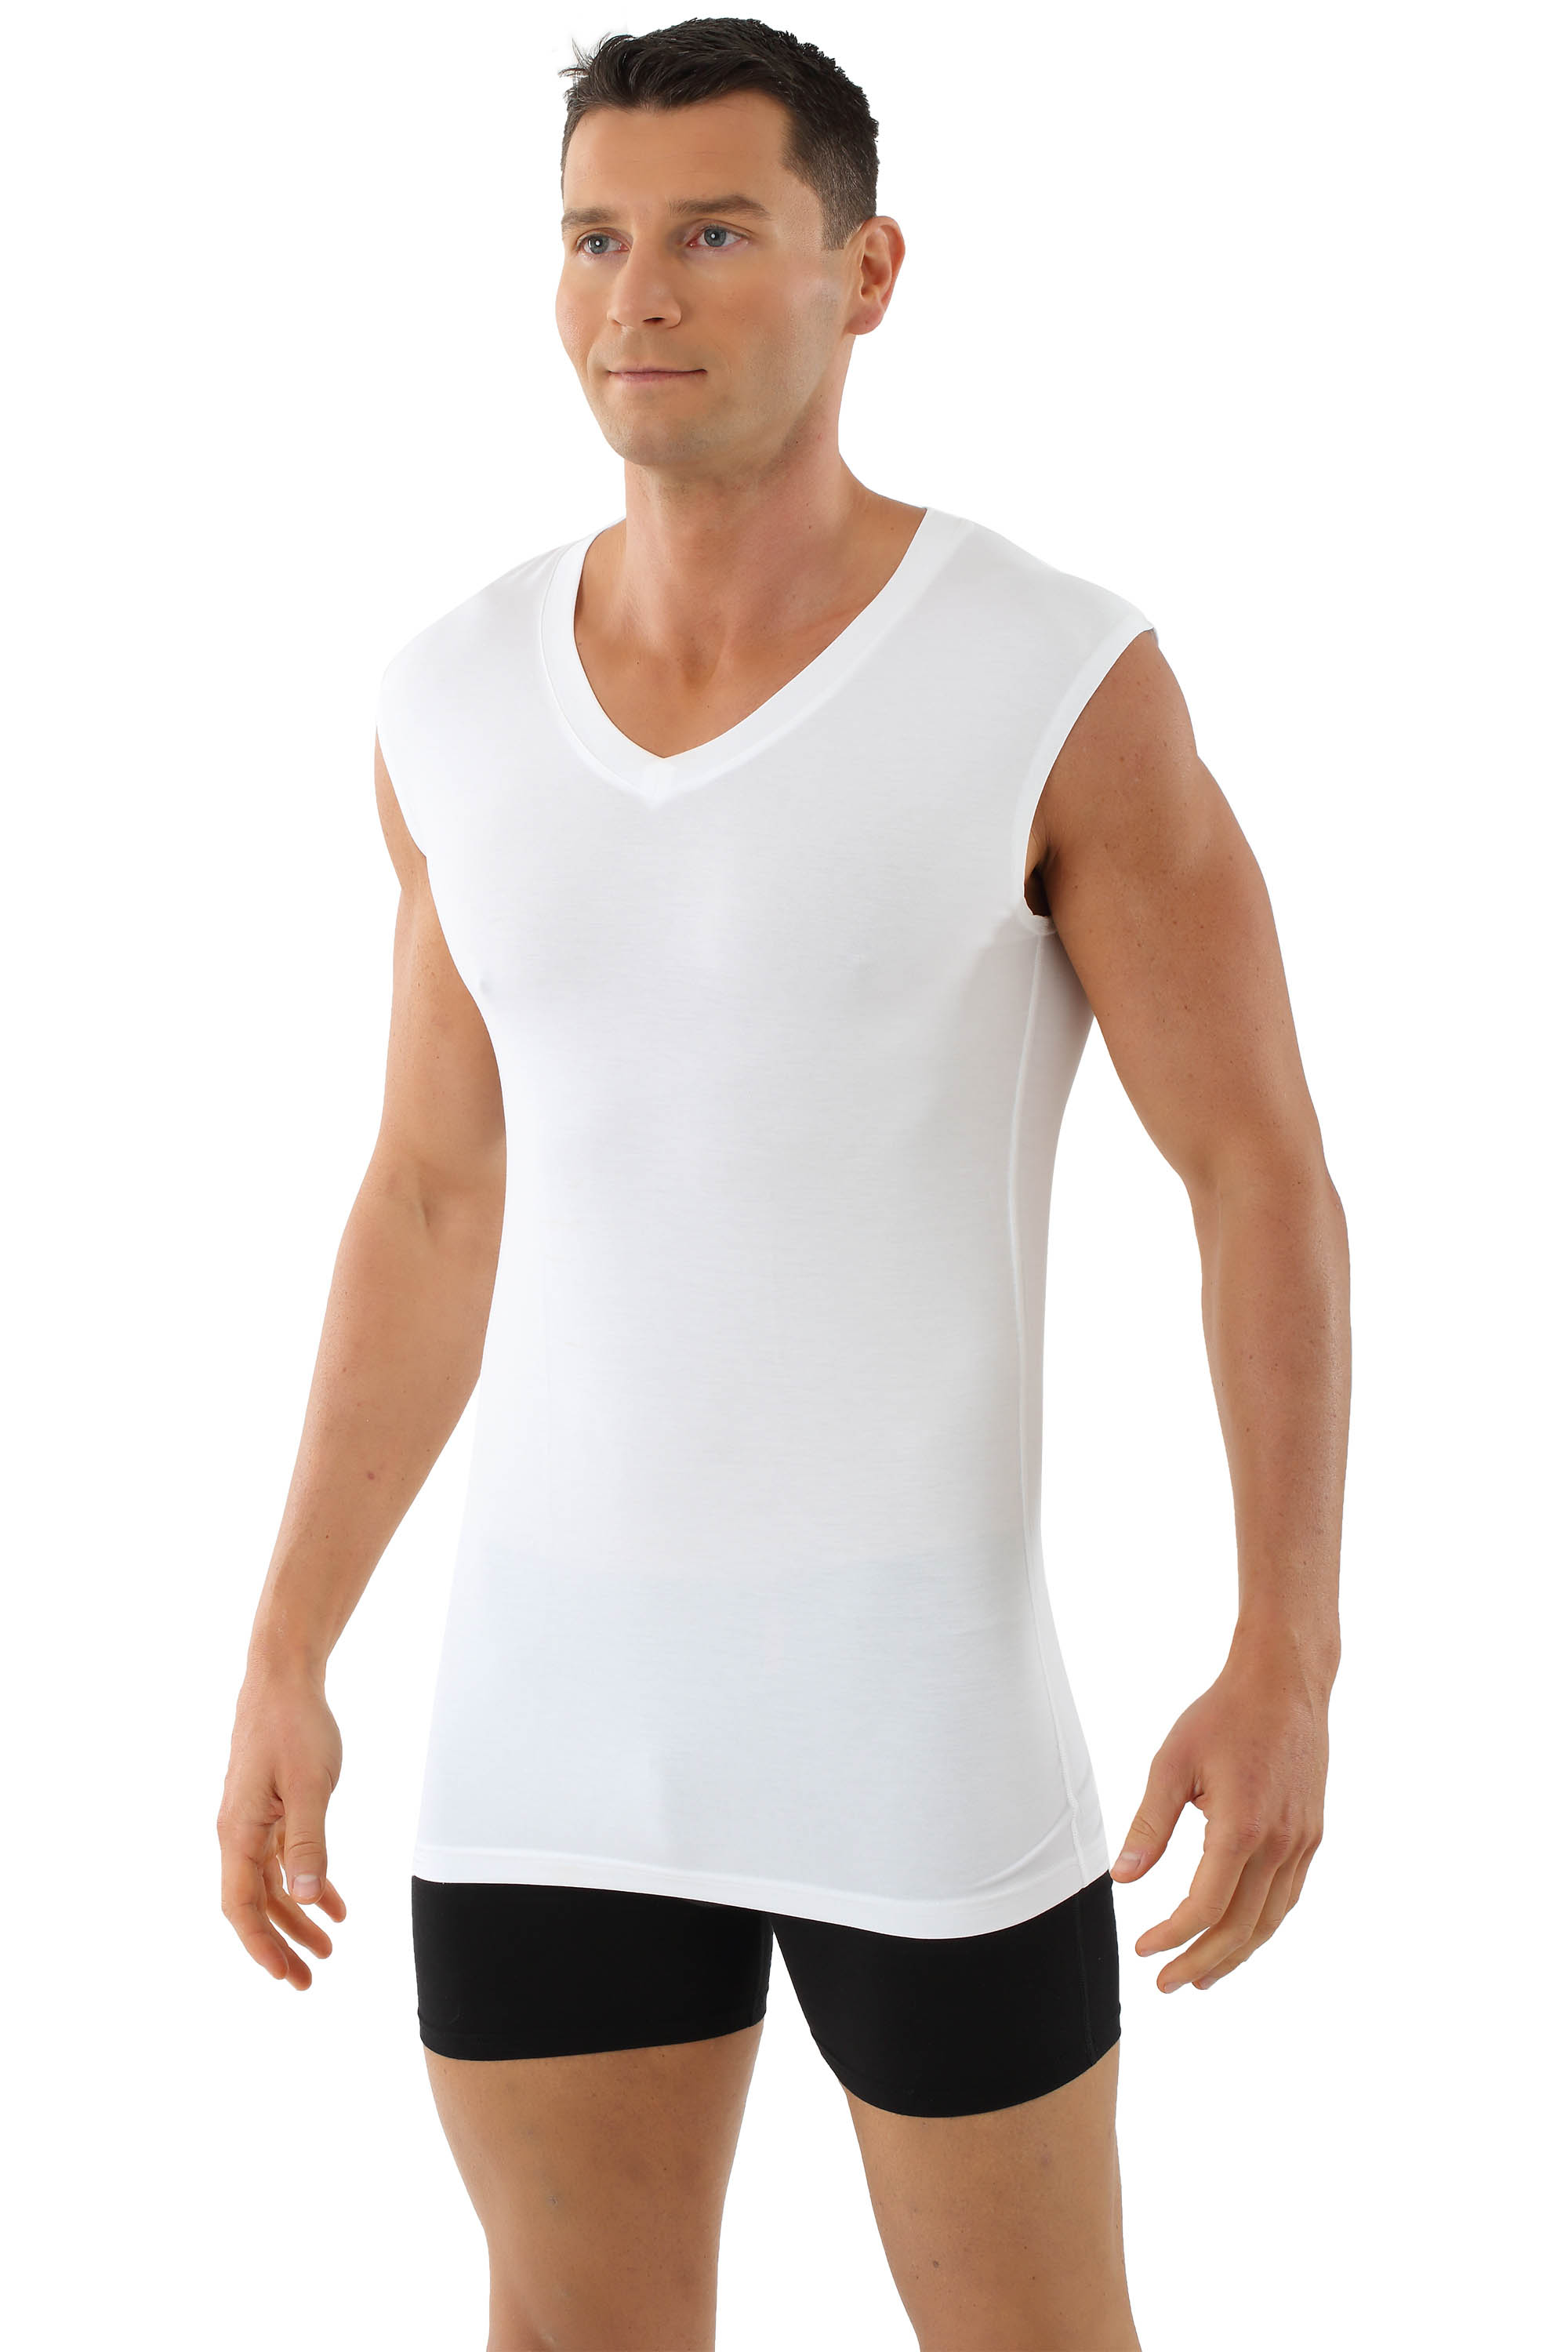 Herren Atmungsaktiv Funktions Unterhemd Unterwäsche Kompressions T-Shirt 